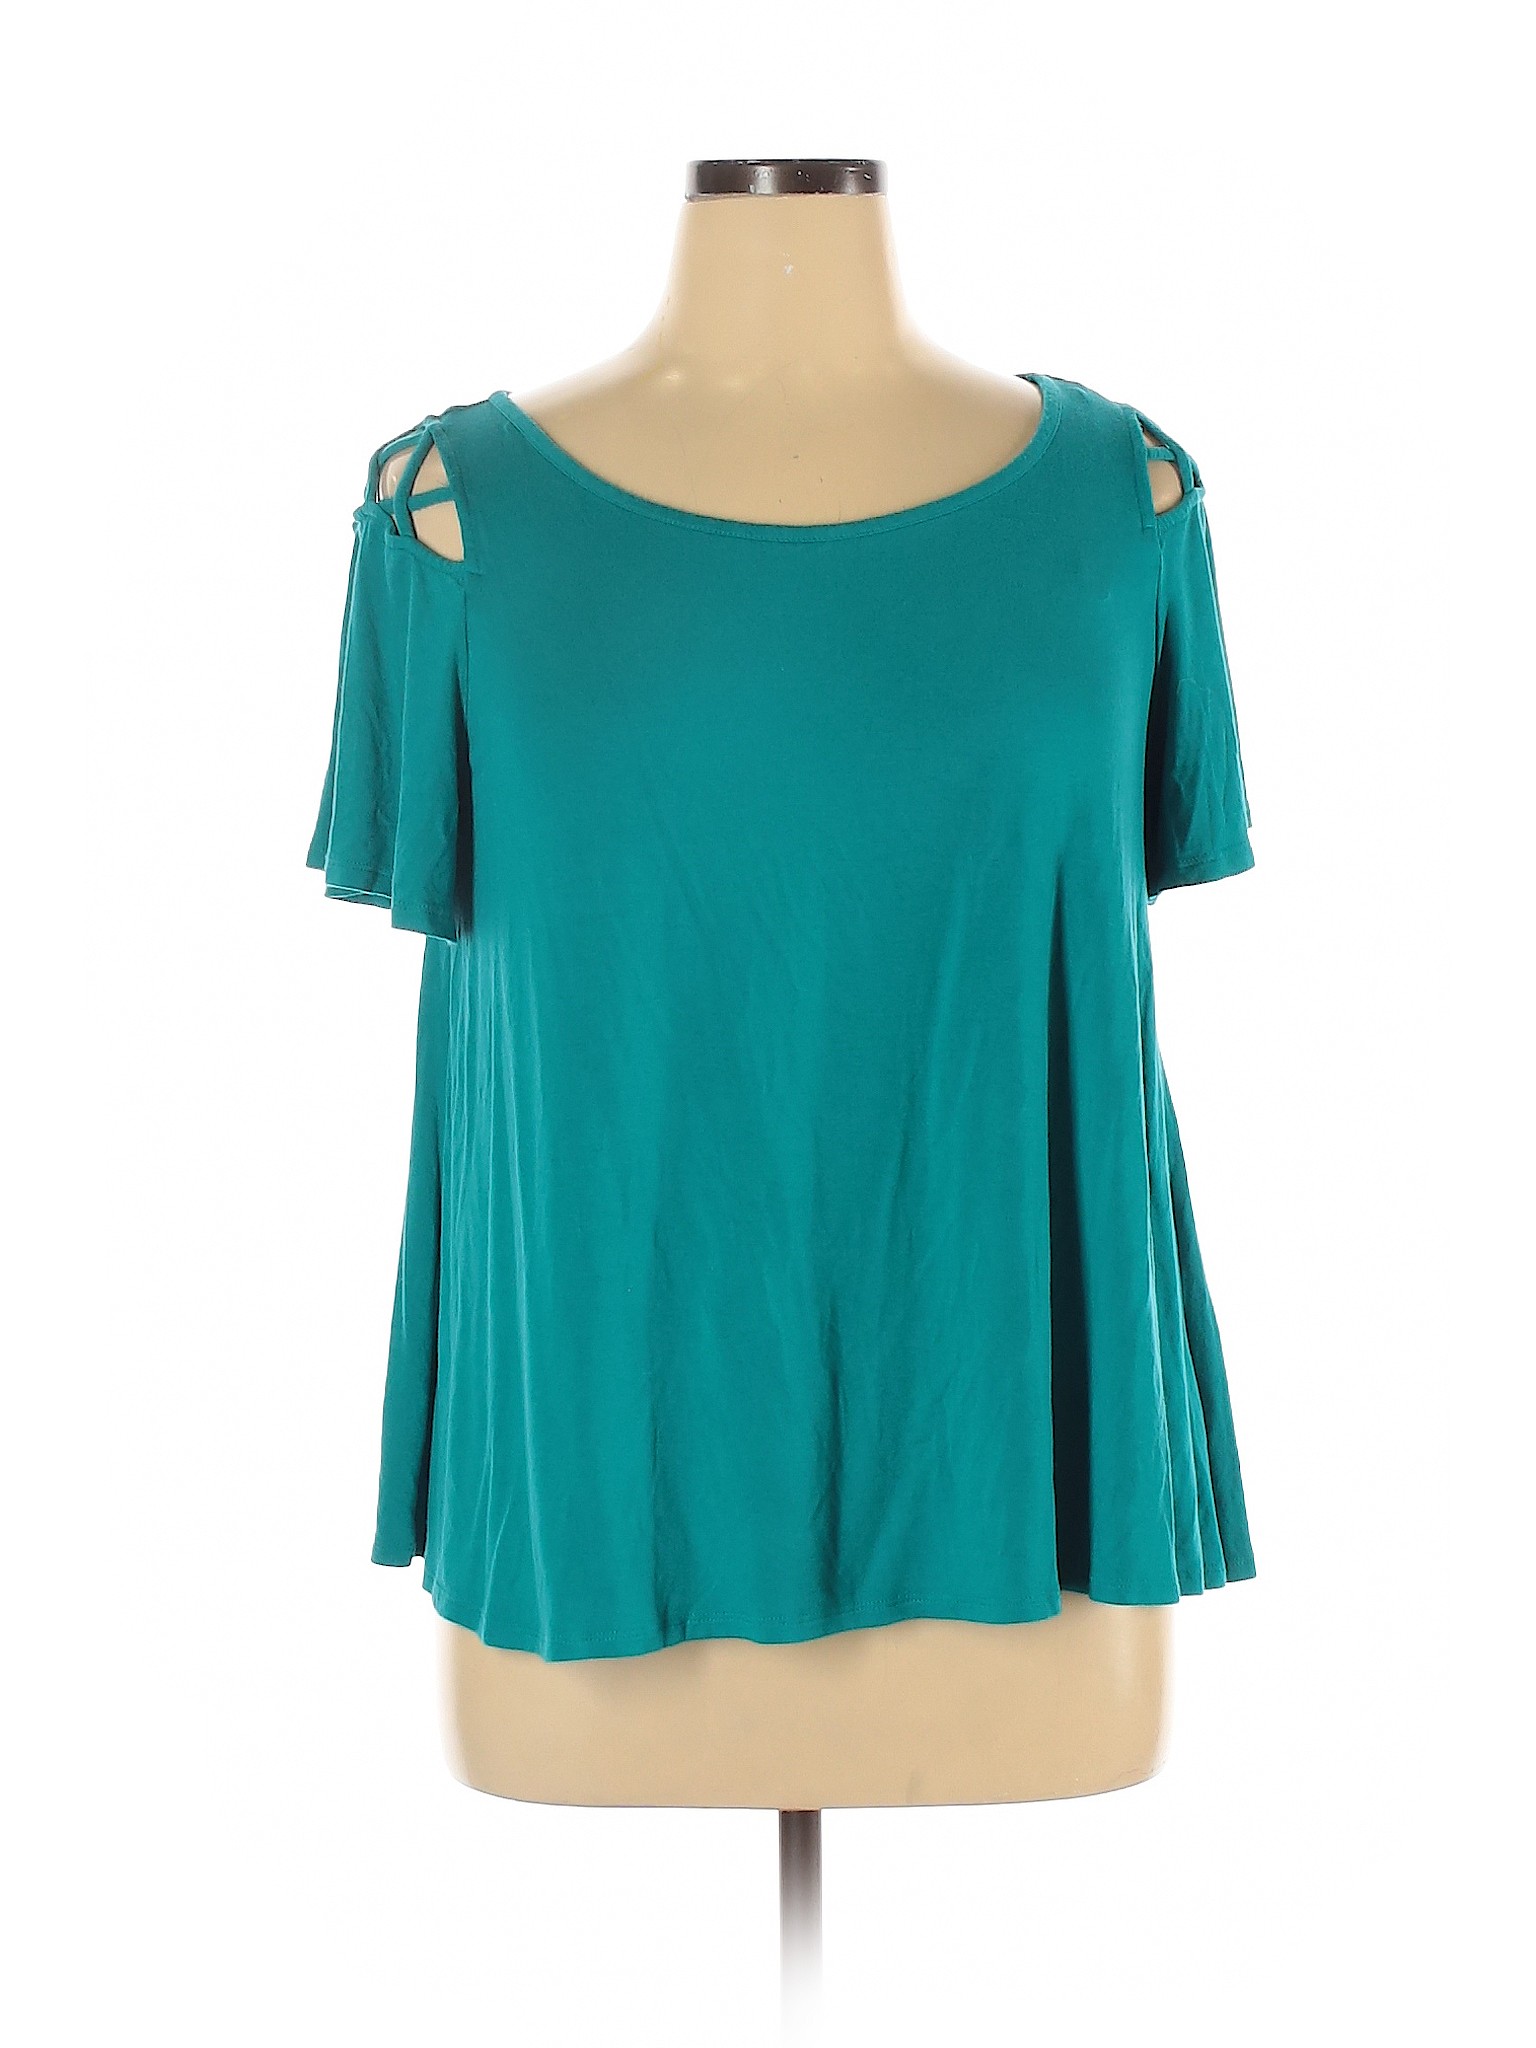 Westport Women Green Short Sleeve Top XL | eBay